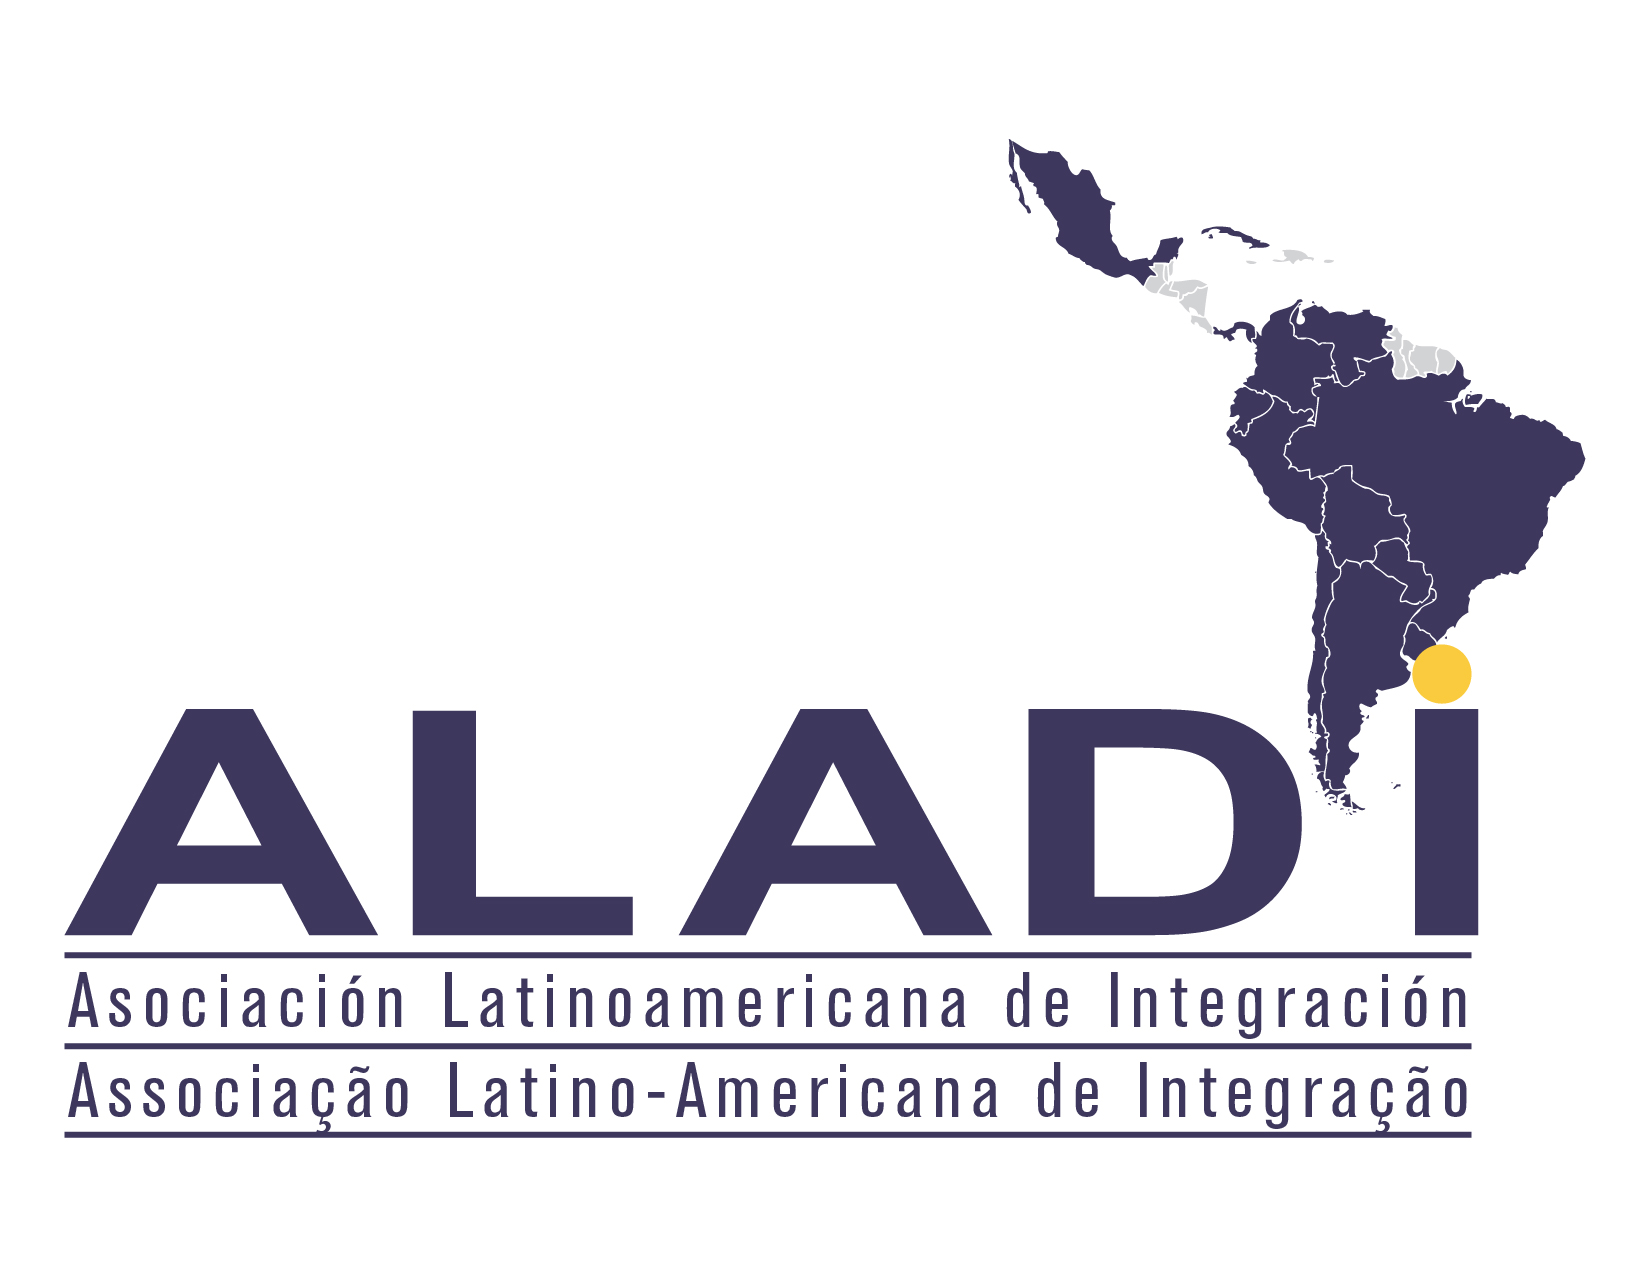 Bienvenido Kwai a ALAI! - Asociación Latinoaméricana de Internet